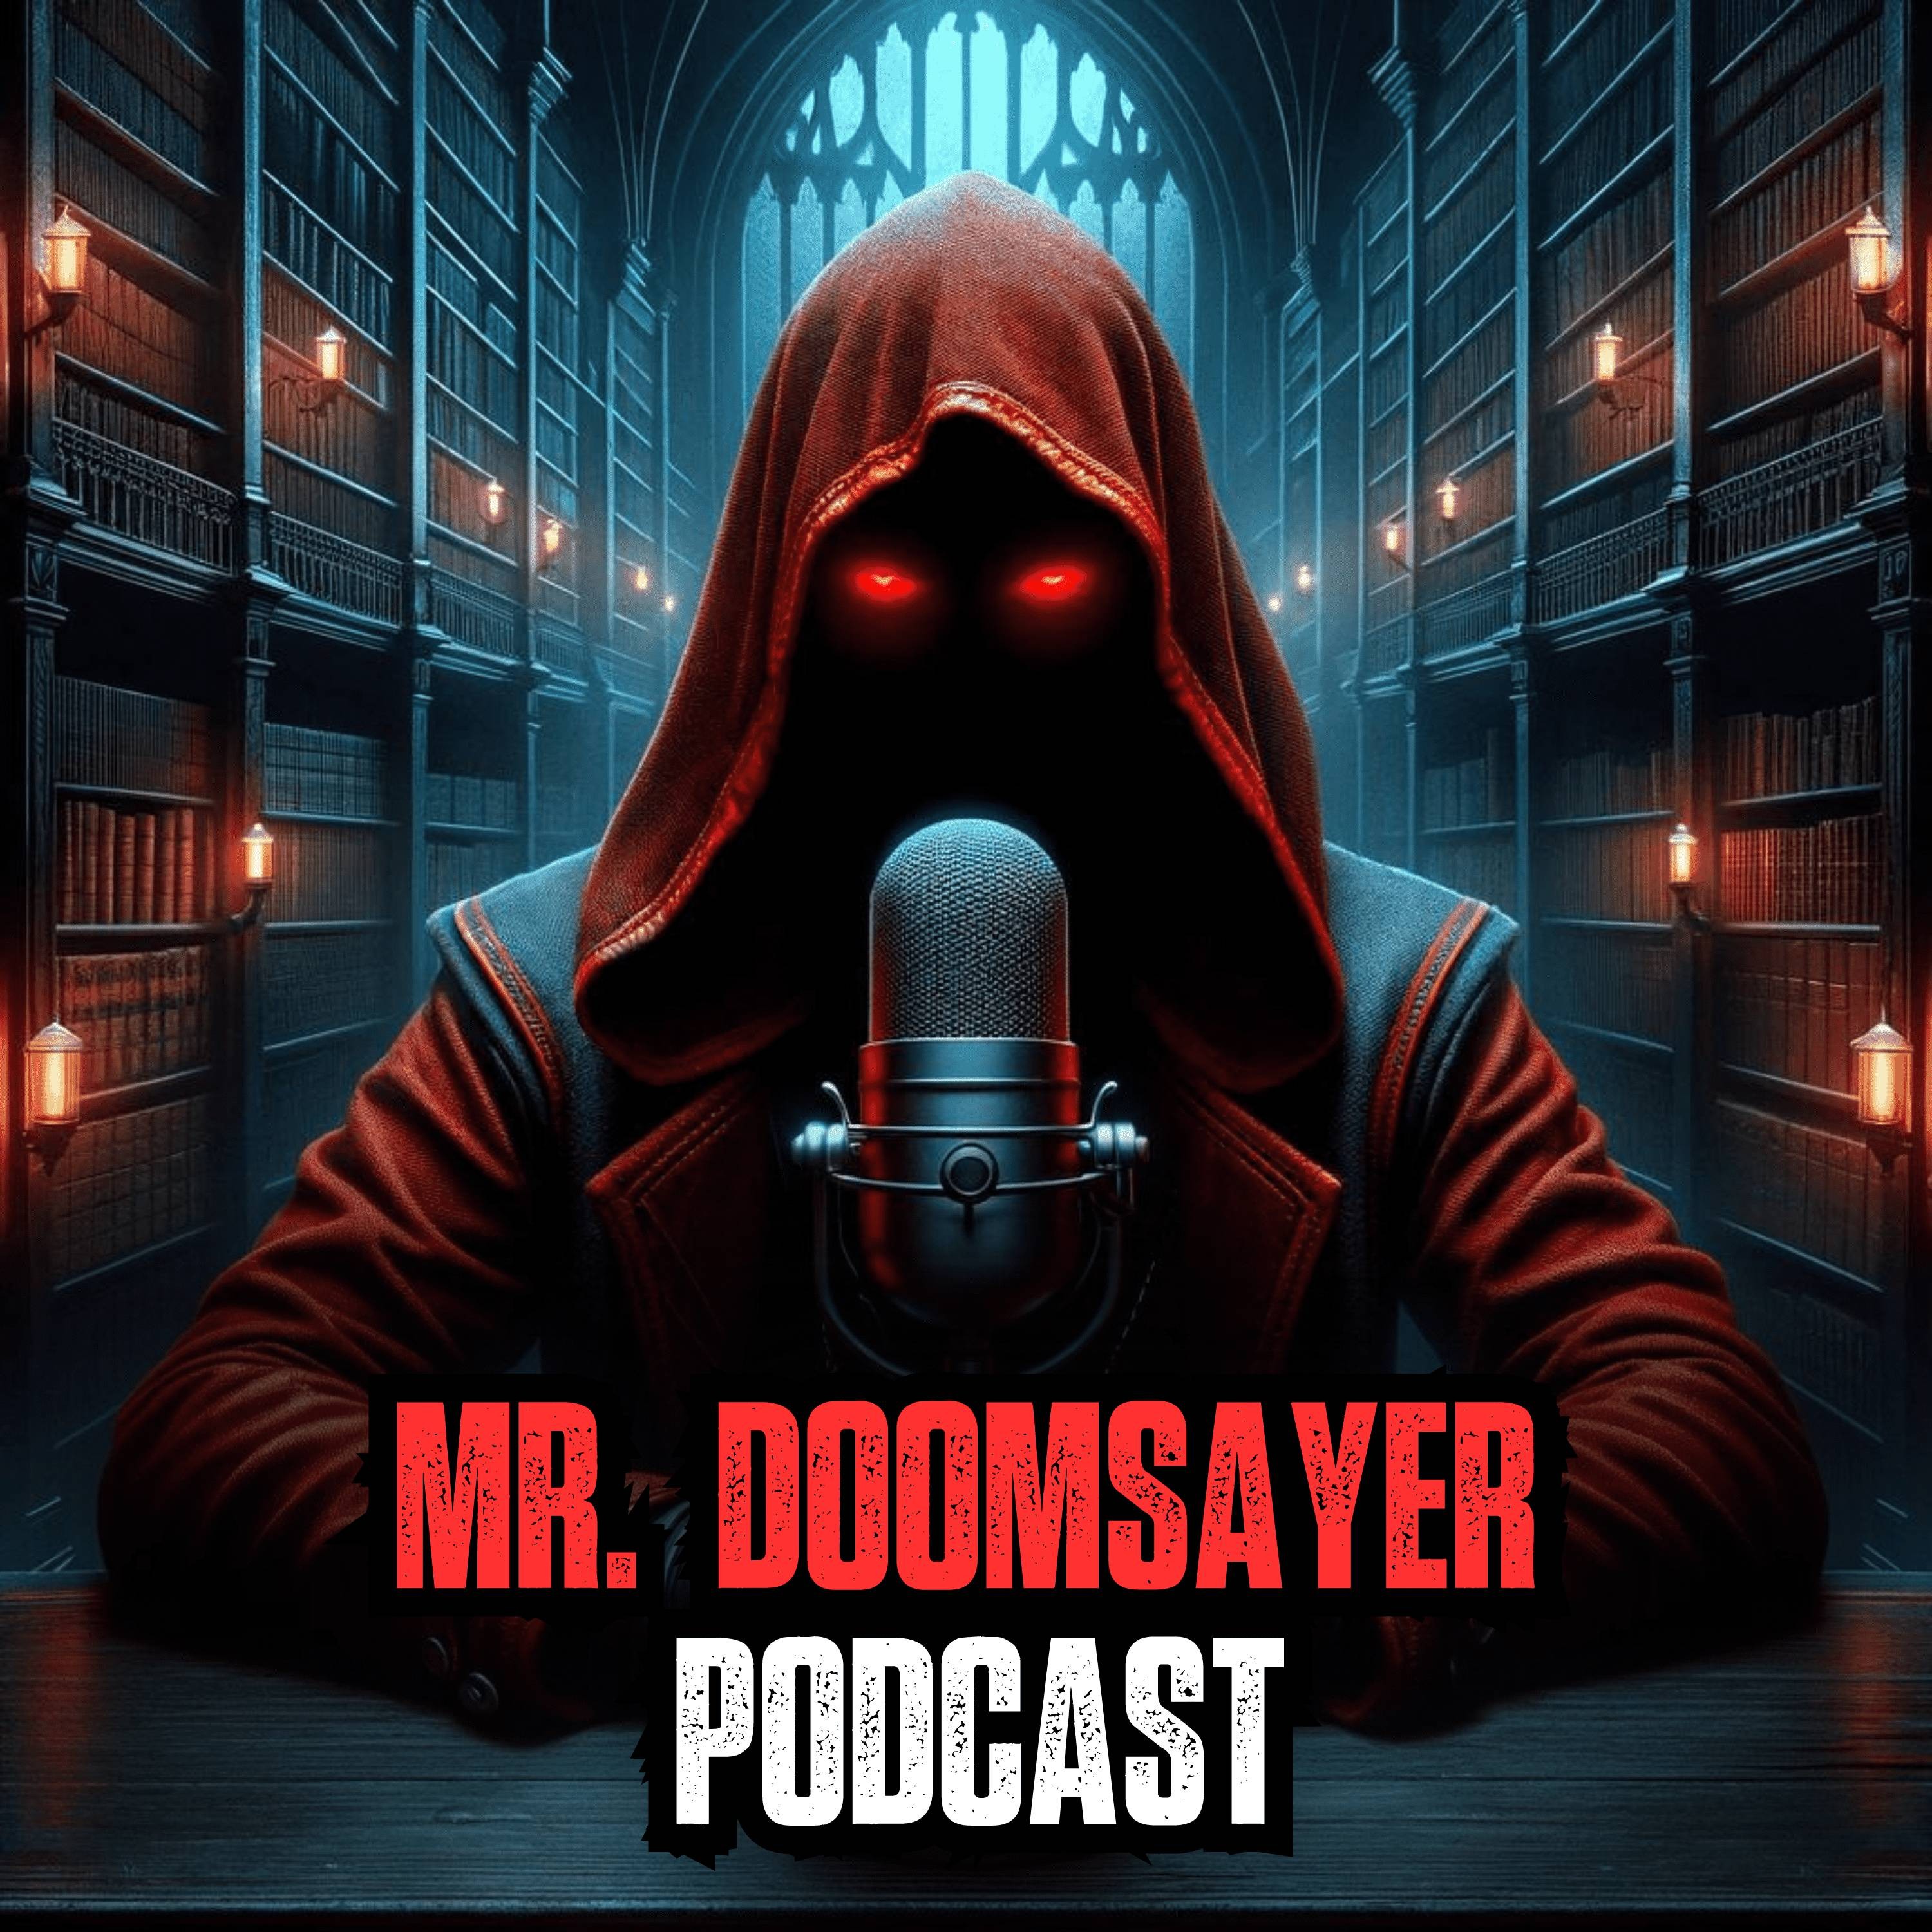 The Mr. Doomsayer Podcast